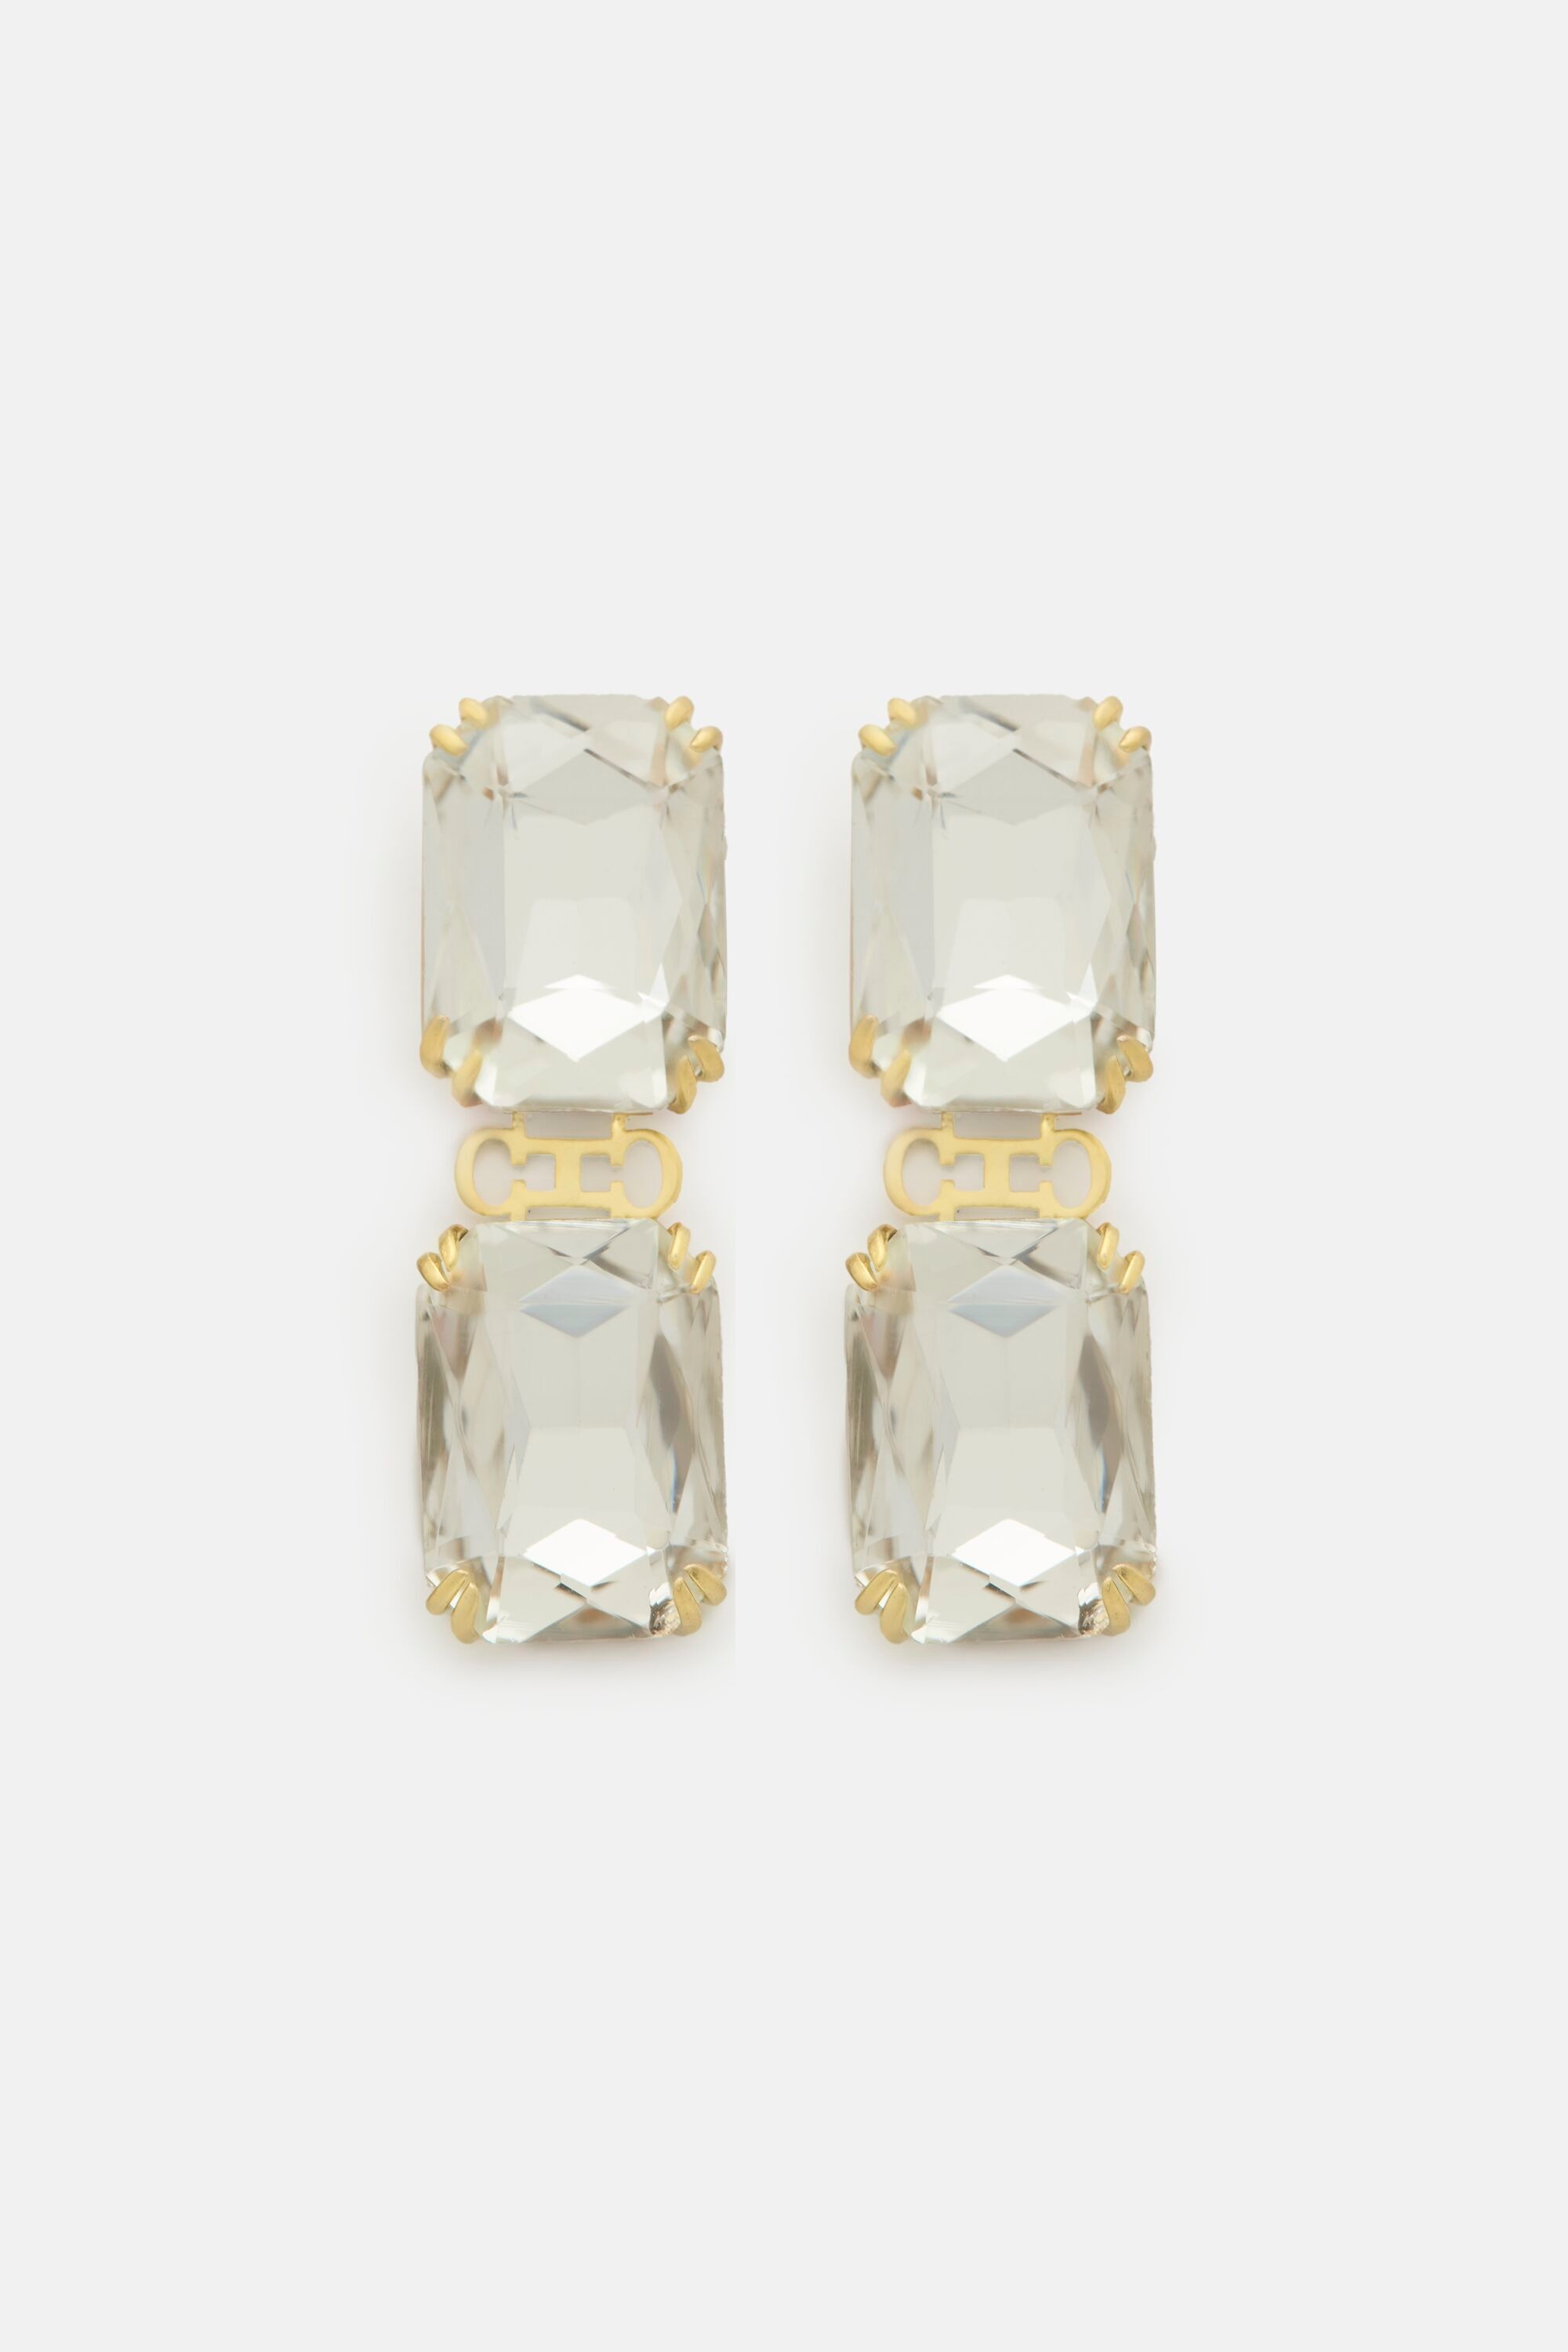 Initials Insignia Crystal earrings